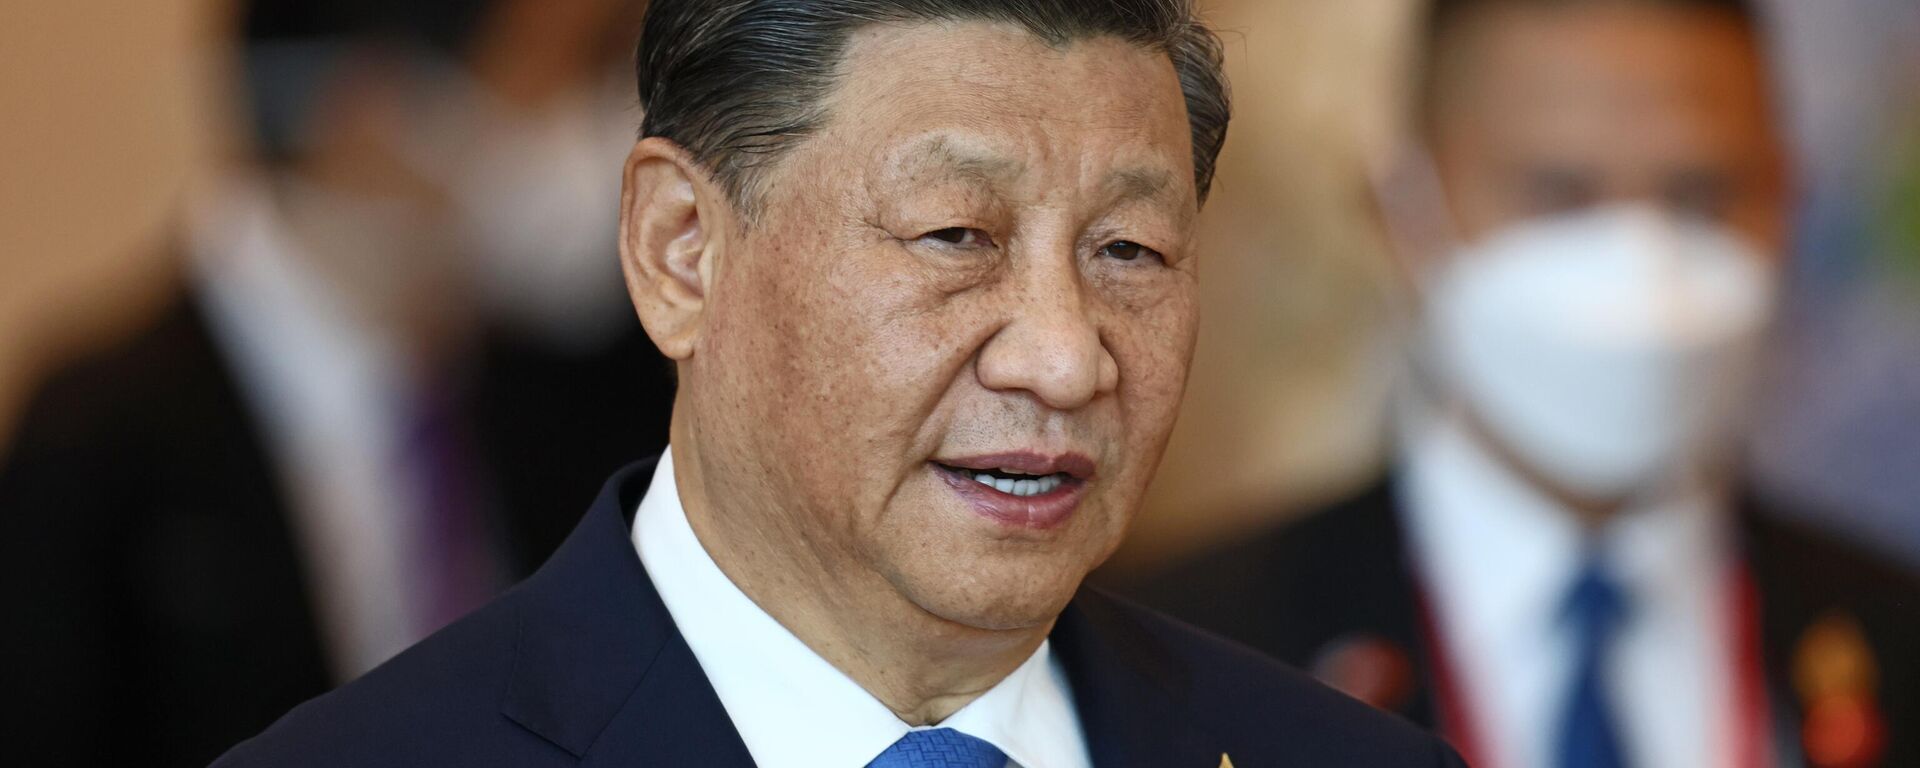 Xi Jinping, presidente de China, en la Reunión de Líderes Económicos de la APEC durante la cumbre del Foro de Cooperación Económica Asia-Pacífico, en Bangkok, Tailandia, el 19 de noviembre de 2022 - Sputnik Mundo, 1920, 16.04.2024